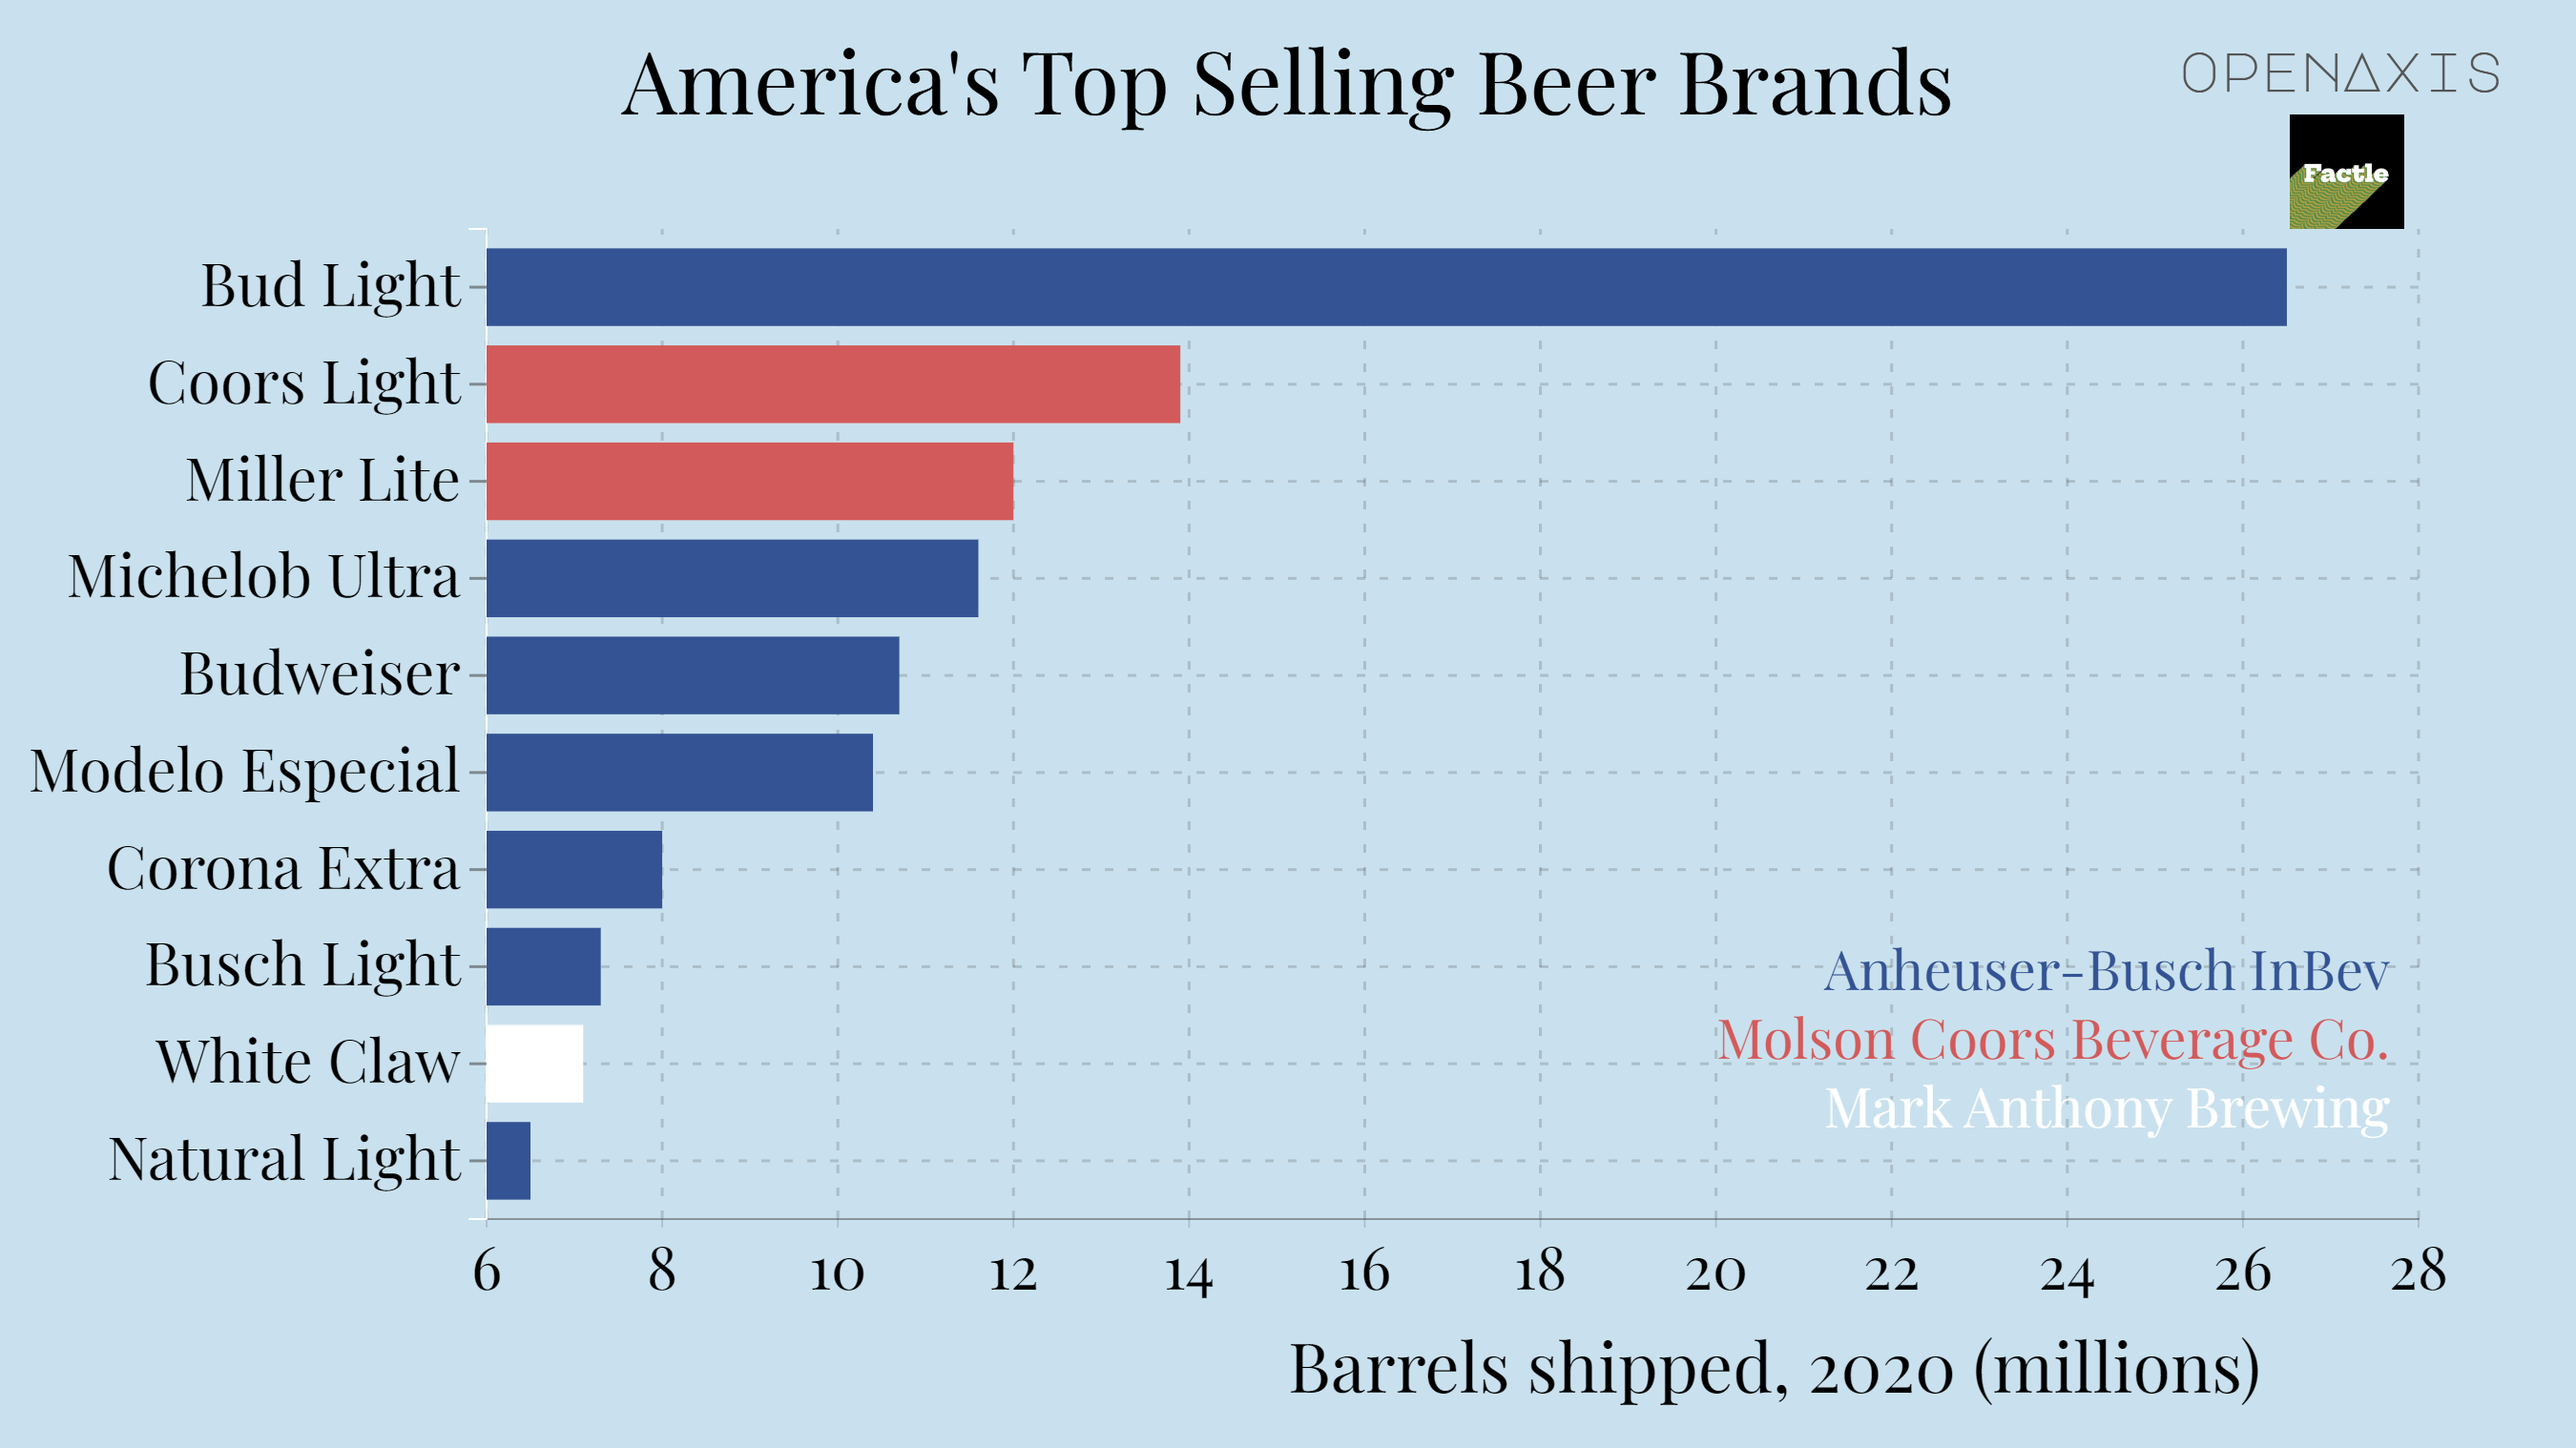 "America's Top Selling Beer Brands"